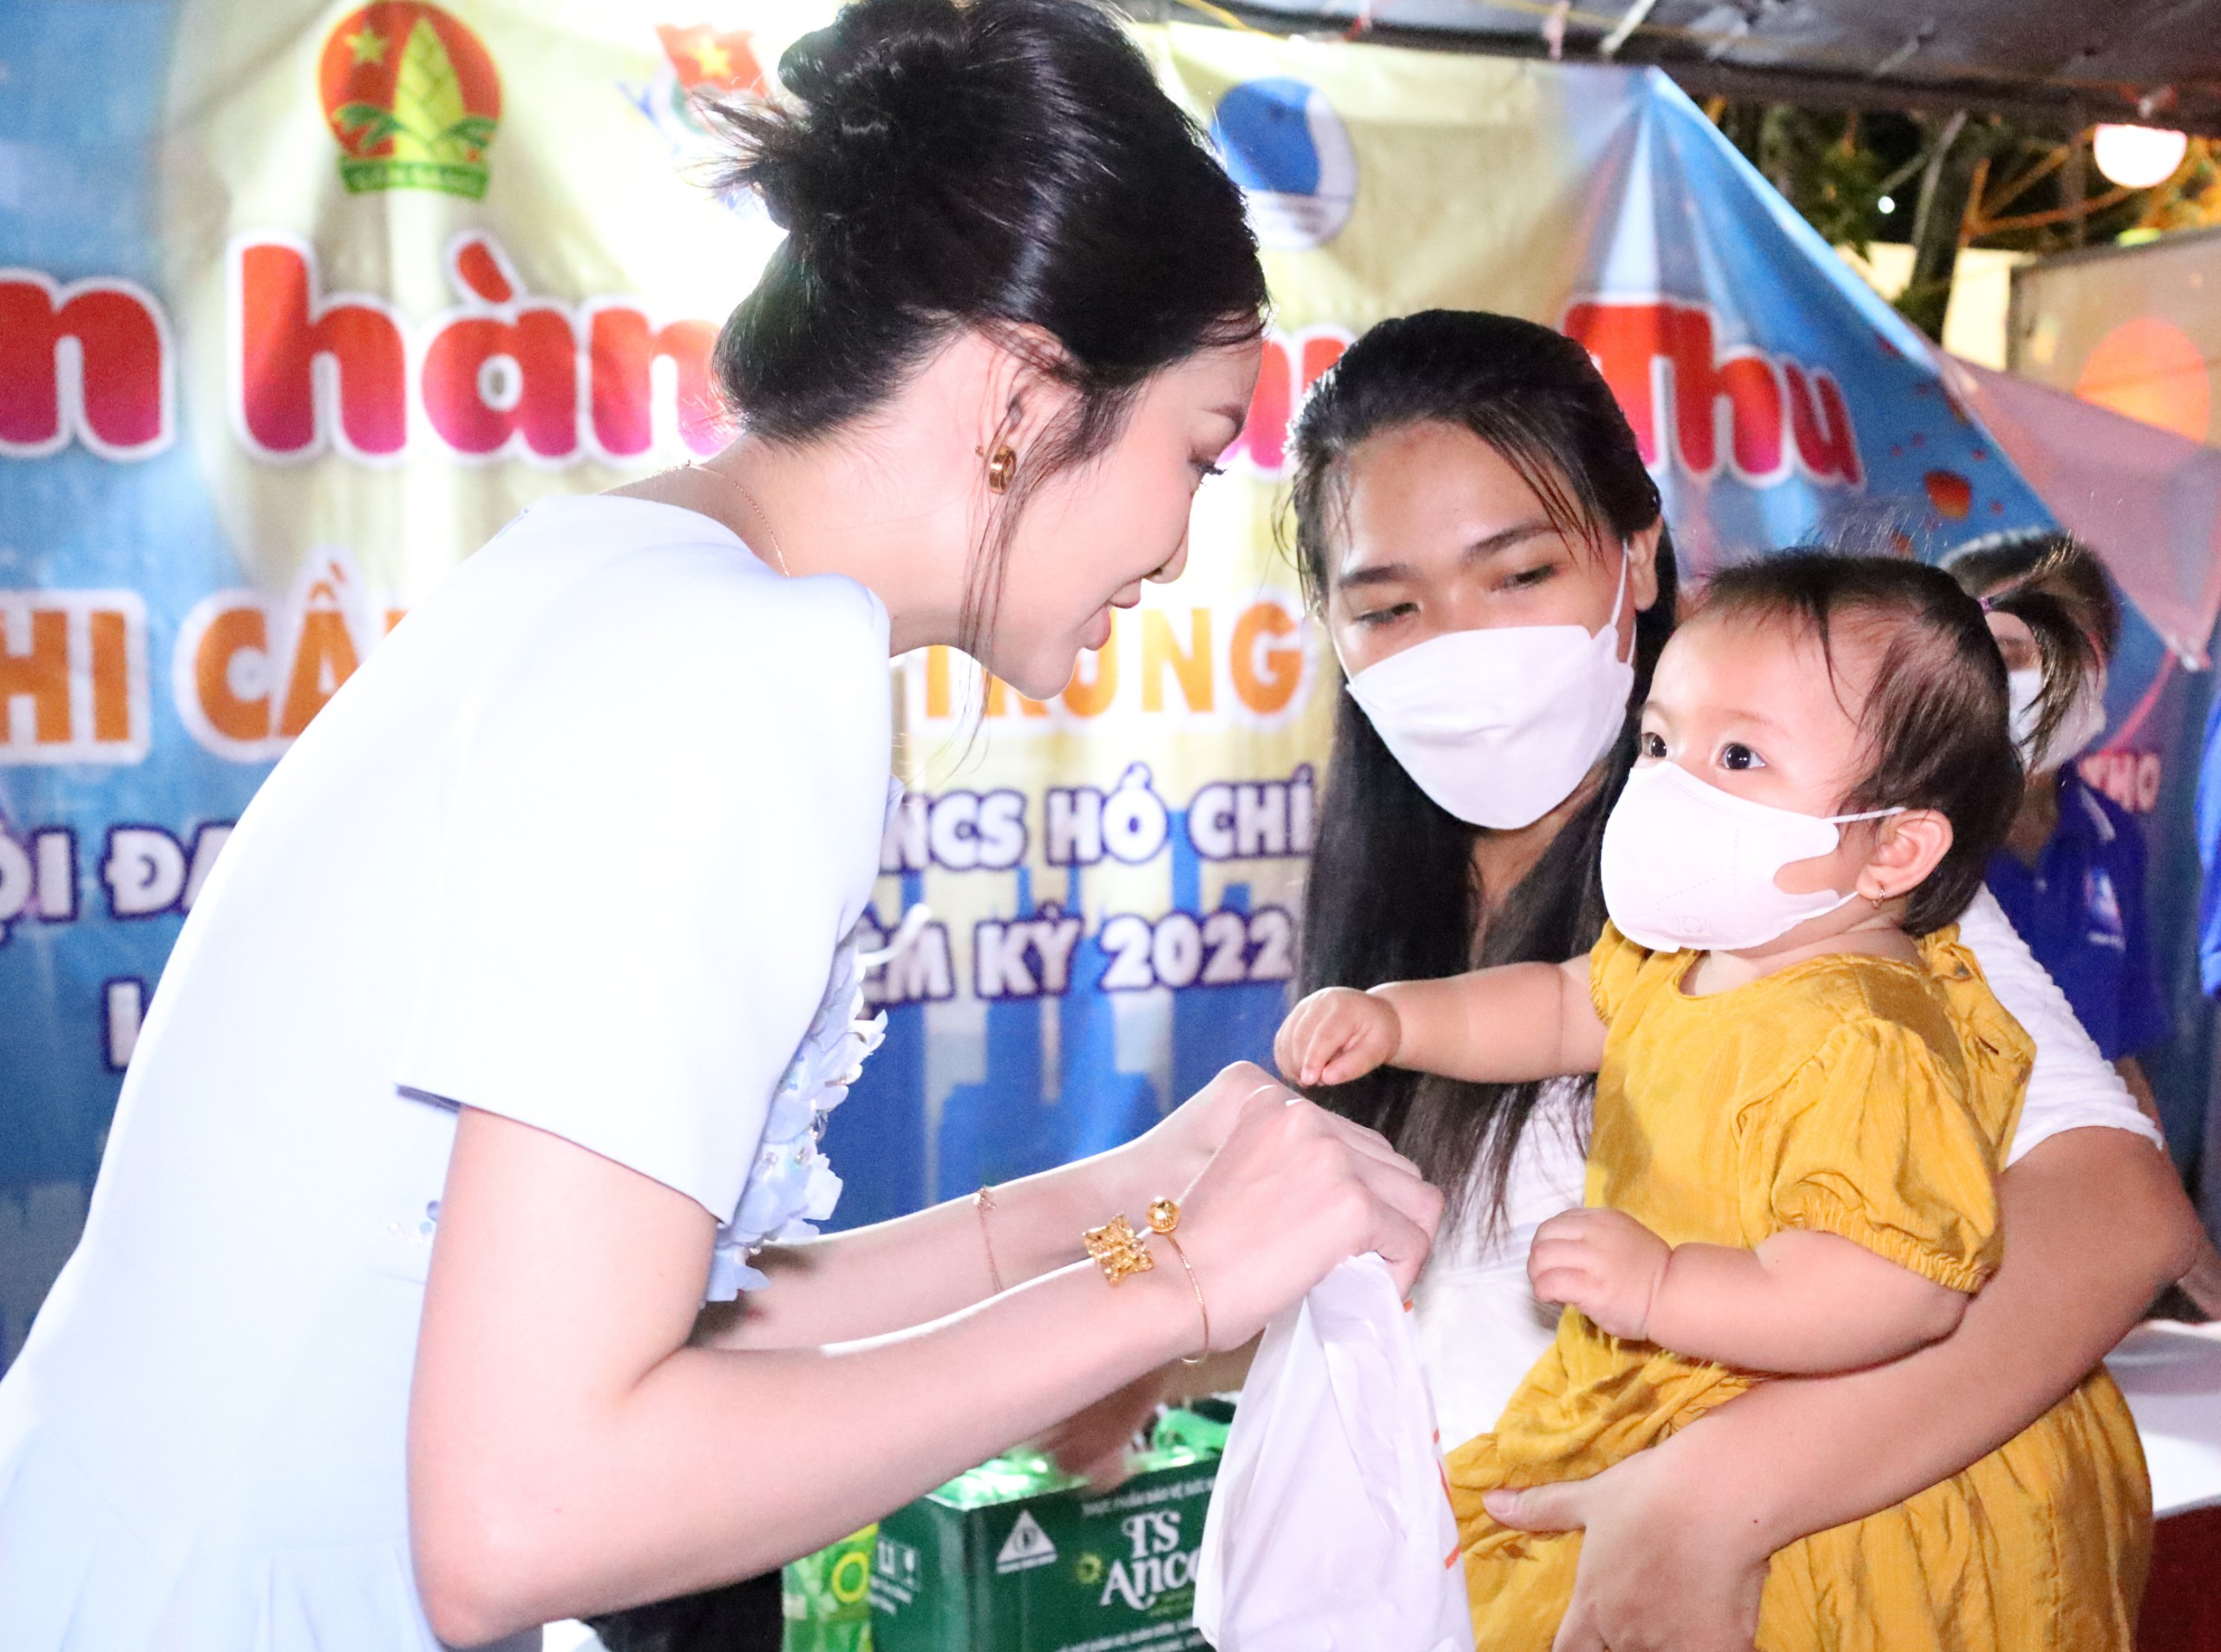 Hoa khôi Nam Bộ 2017 Nguyễn Thị Hải Yến trao tặng quà cho các em thiếu nhi, người đẹp cũng tham gia ủng hộ 20 xe đạp, 600 phần quà cho chương trình.